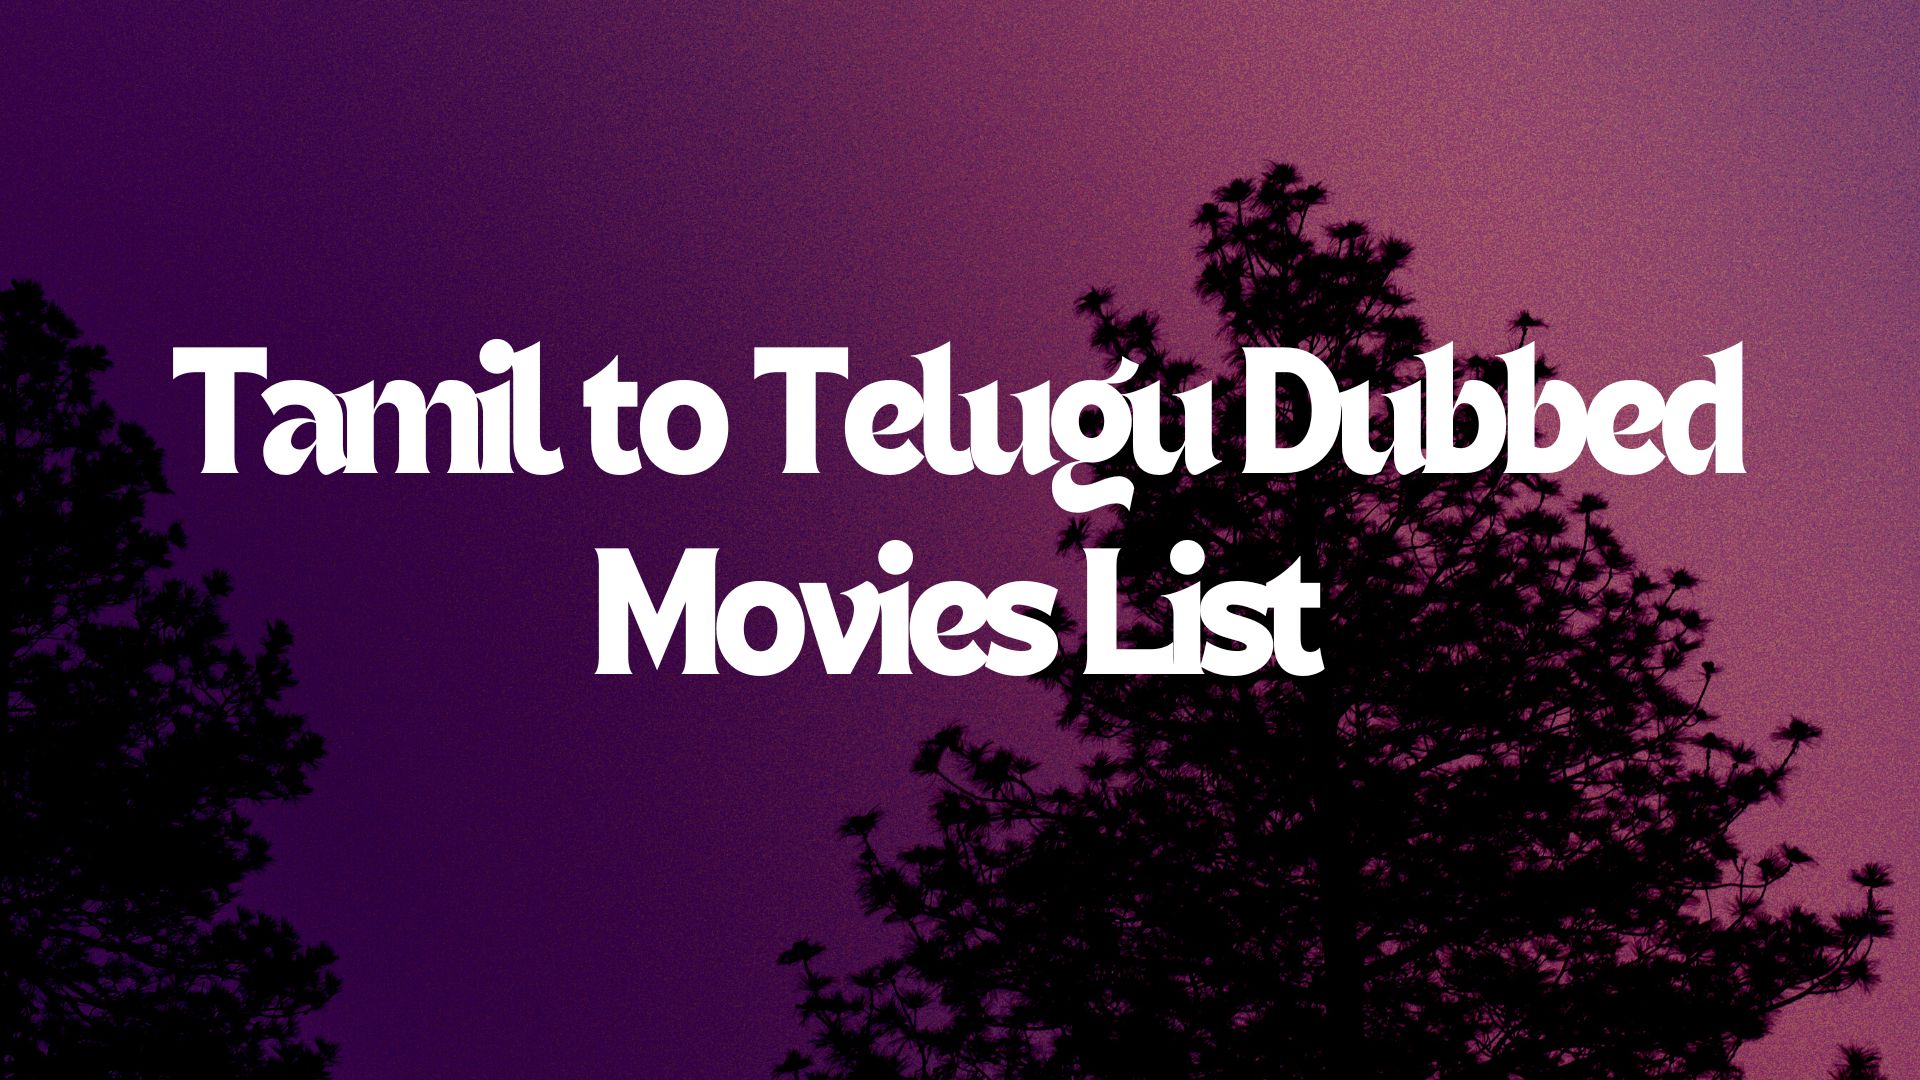 Tamil to Telugu Dubbed Movies List